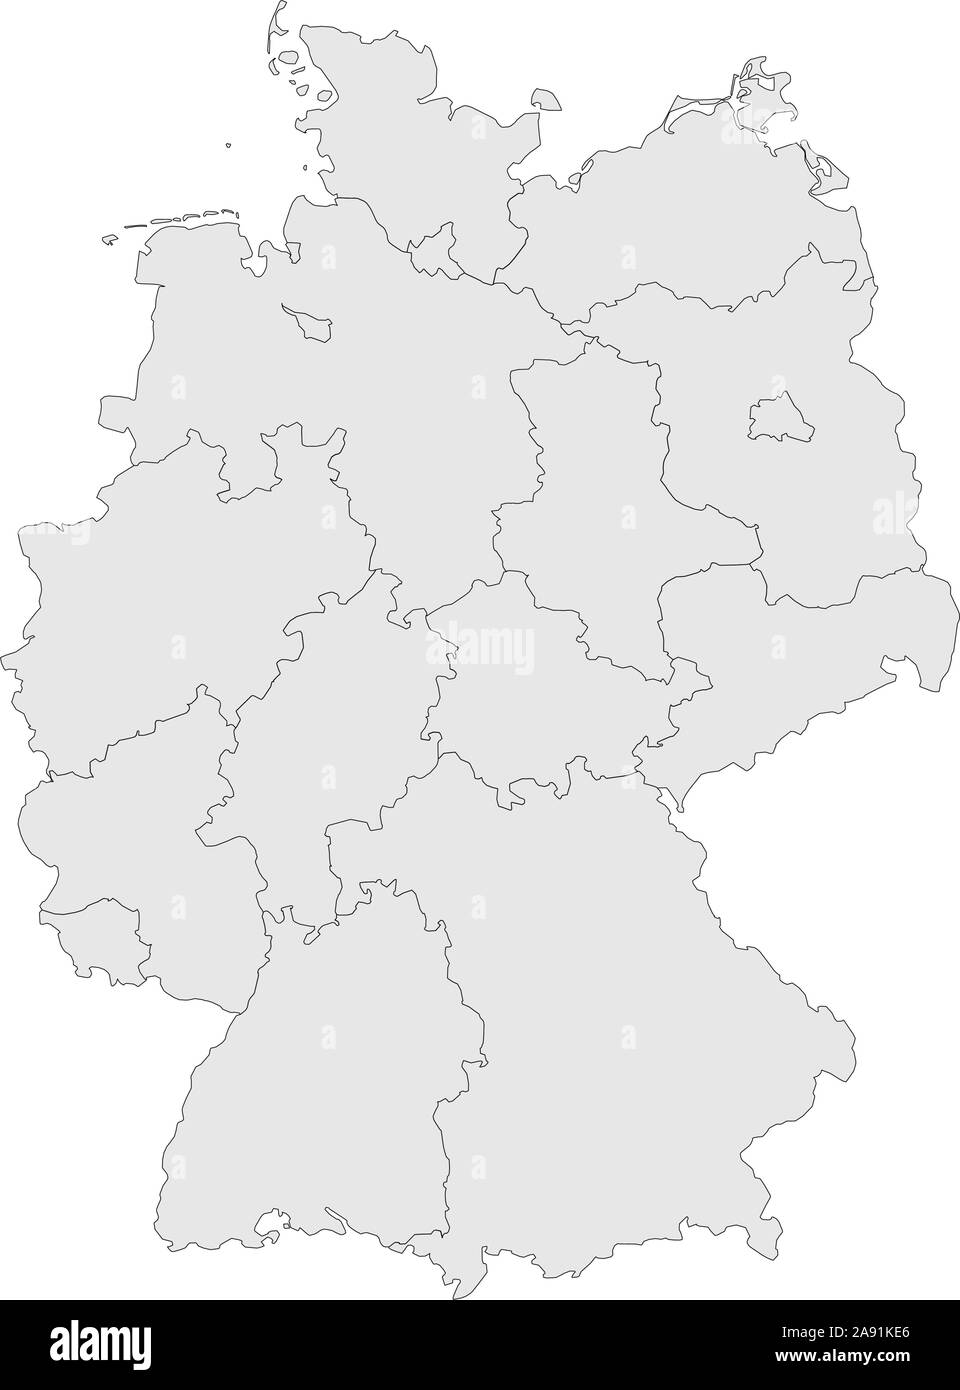 Mapa de las provincias de Alemania con límites ilustración vectorial. Color gris claro. Ilustración del Vector